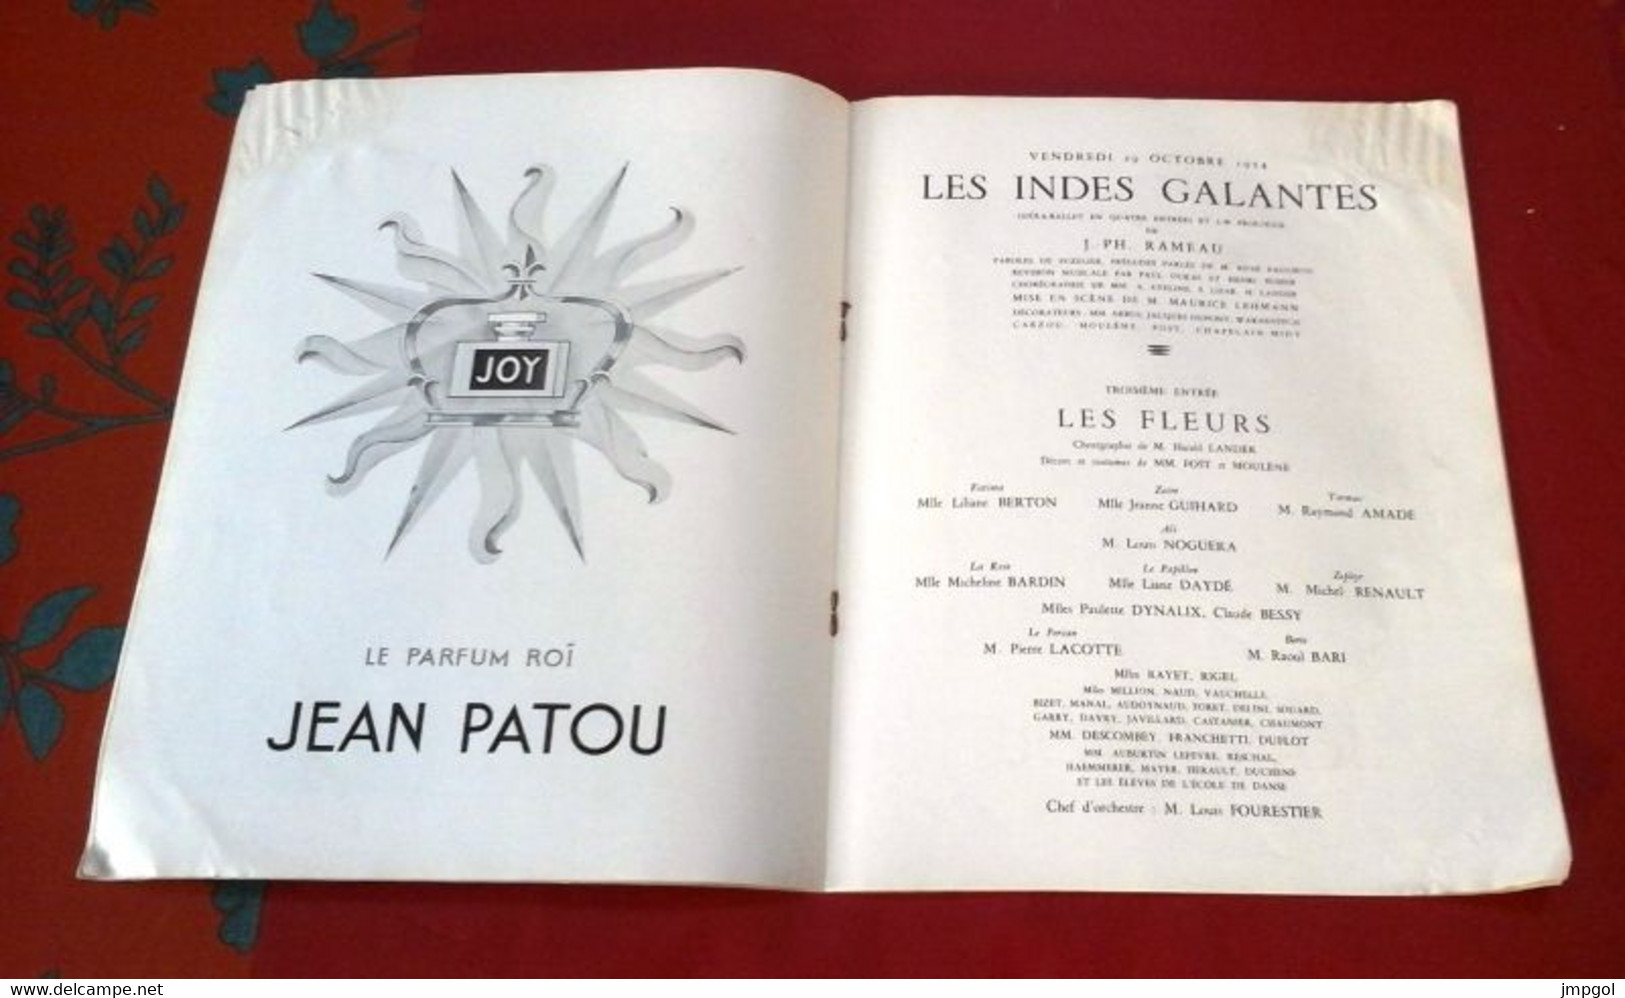 Théâtre National De L'Opéra 1954 En Honneur Empereur Ethiopie Les Indes Galantes Rameau Etudes Riisager - Programme